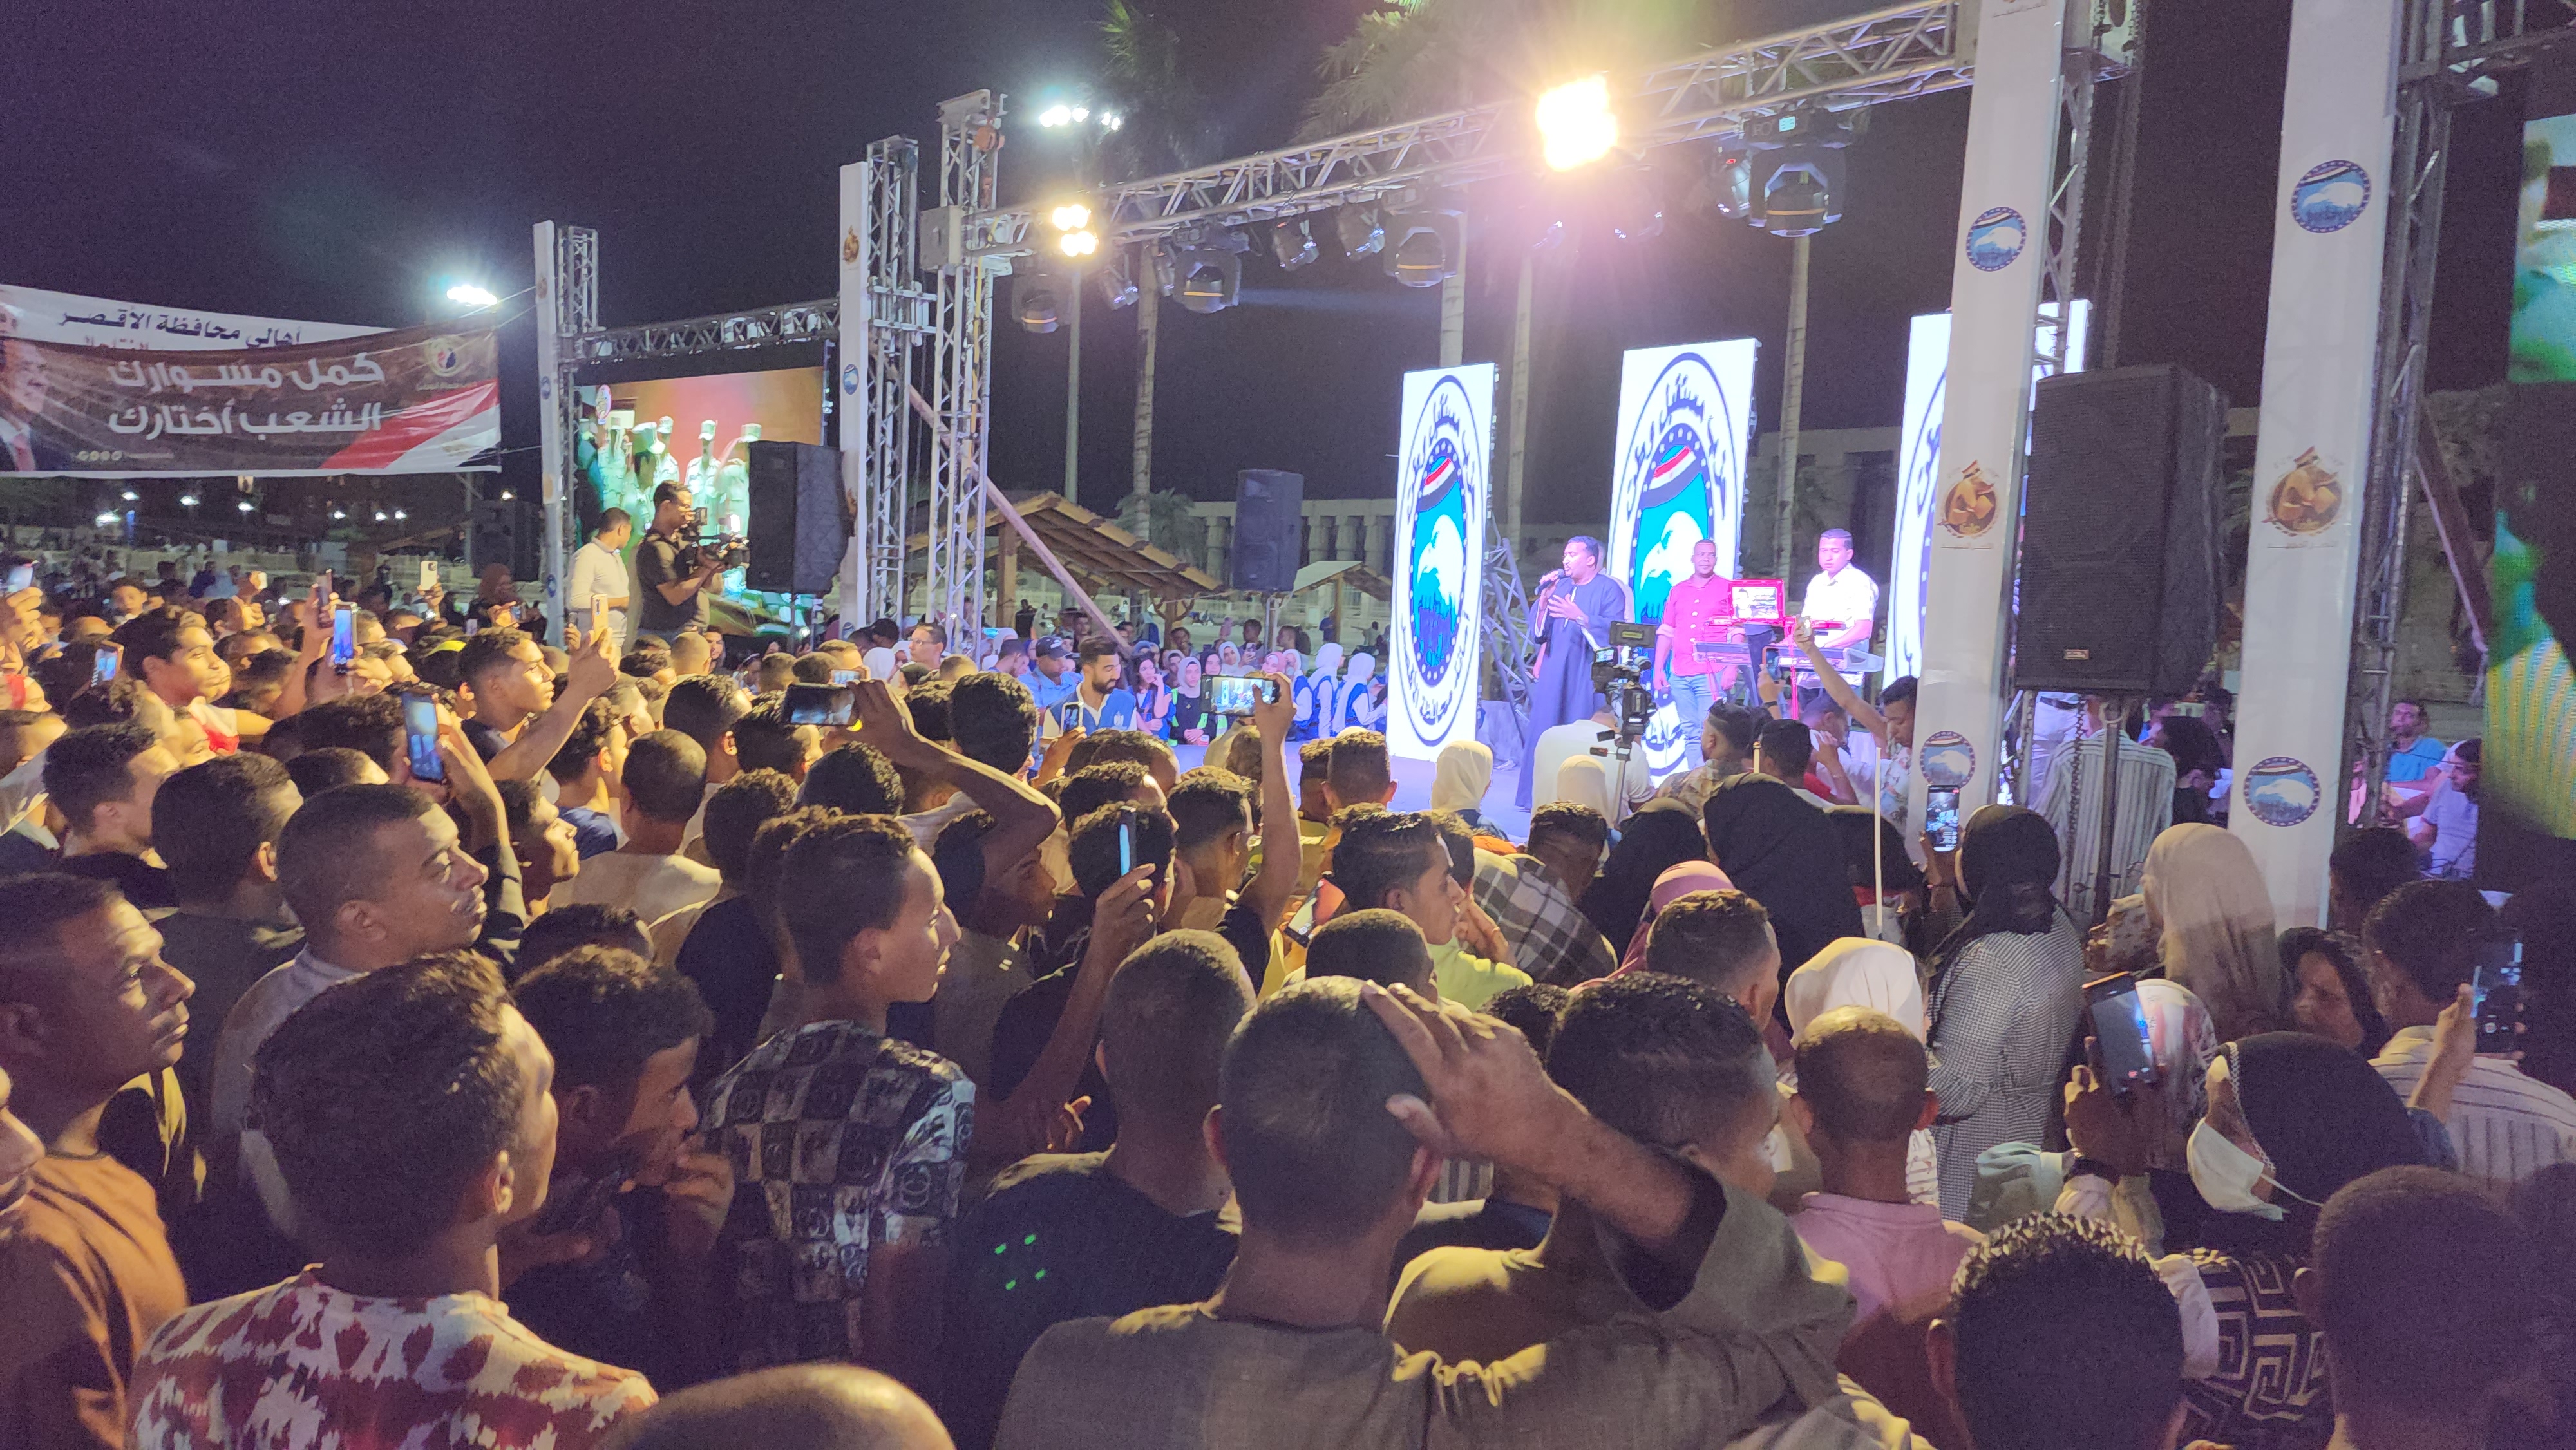  الفنان محمود جمعة يبهج الآلاف في ساحة أبو الحجاج الأقصرى (6)